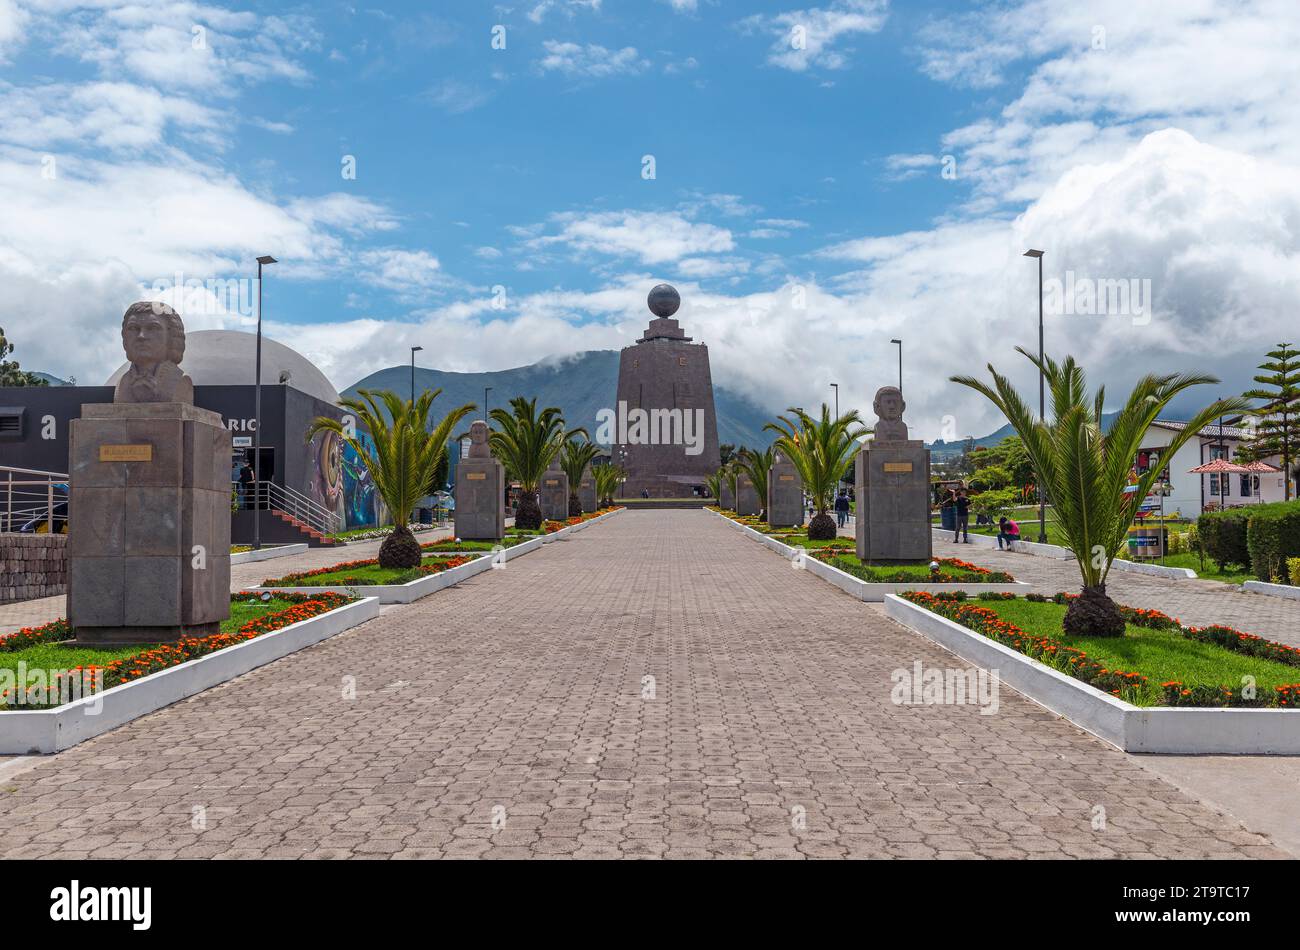 Centre de la ville du monde (Ciudad mitad del Mundo) avec monument de la ligne de l'équateur, Quito, Équateur. Banque D'Images